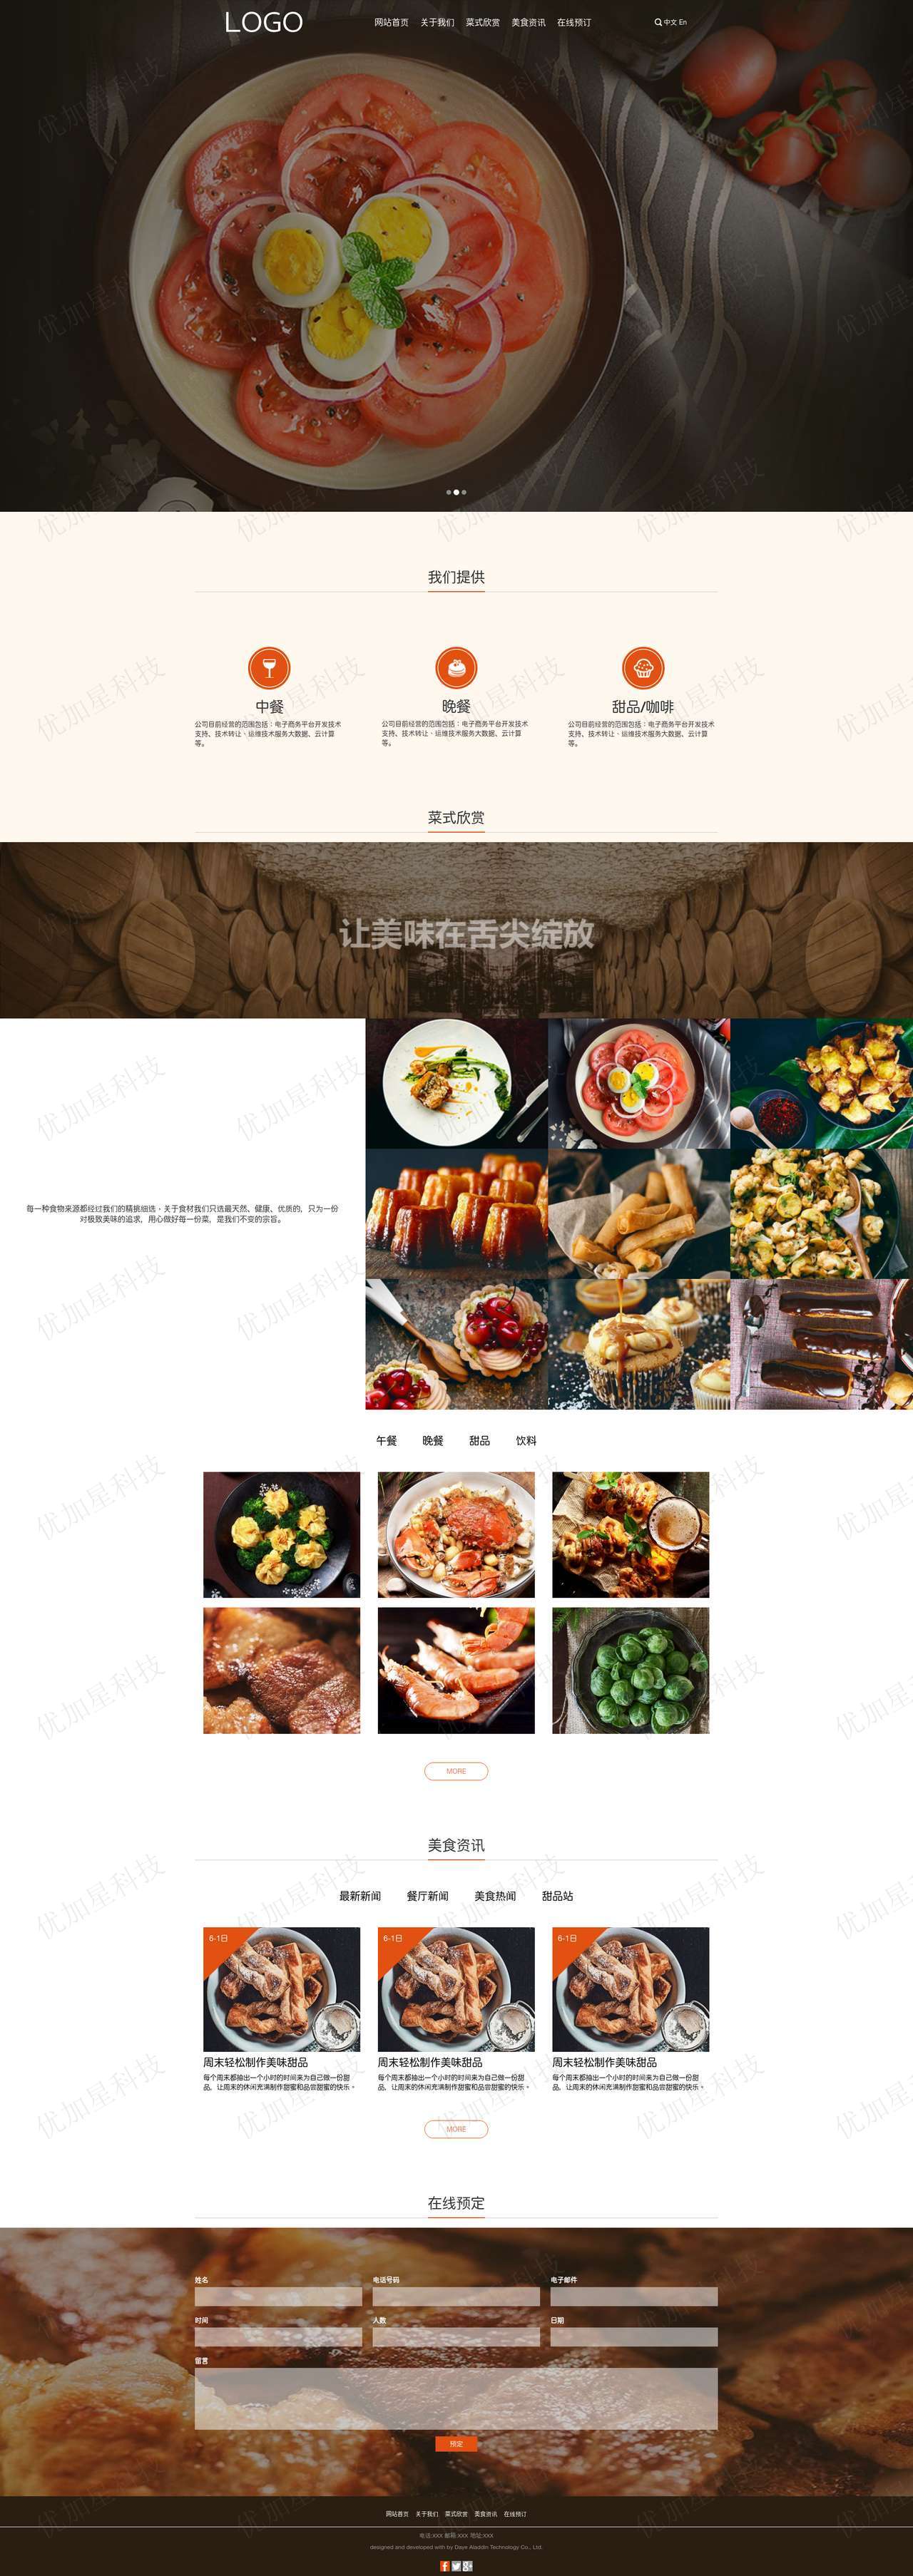 精美宽屏自适应在线预订美食餐厅网站模板_优加星网络科技